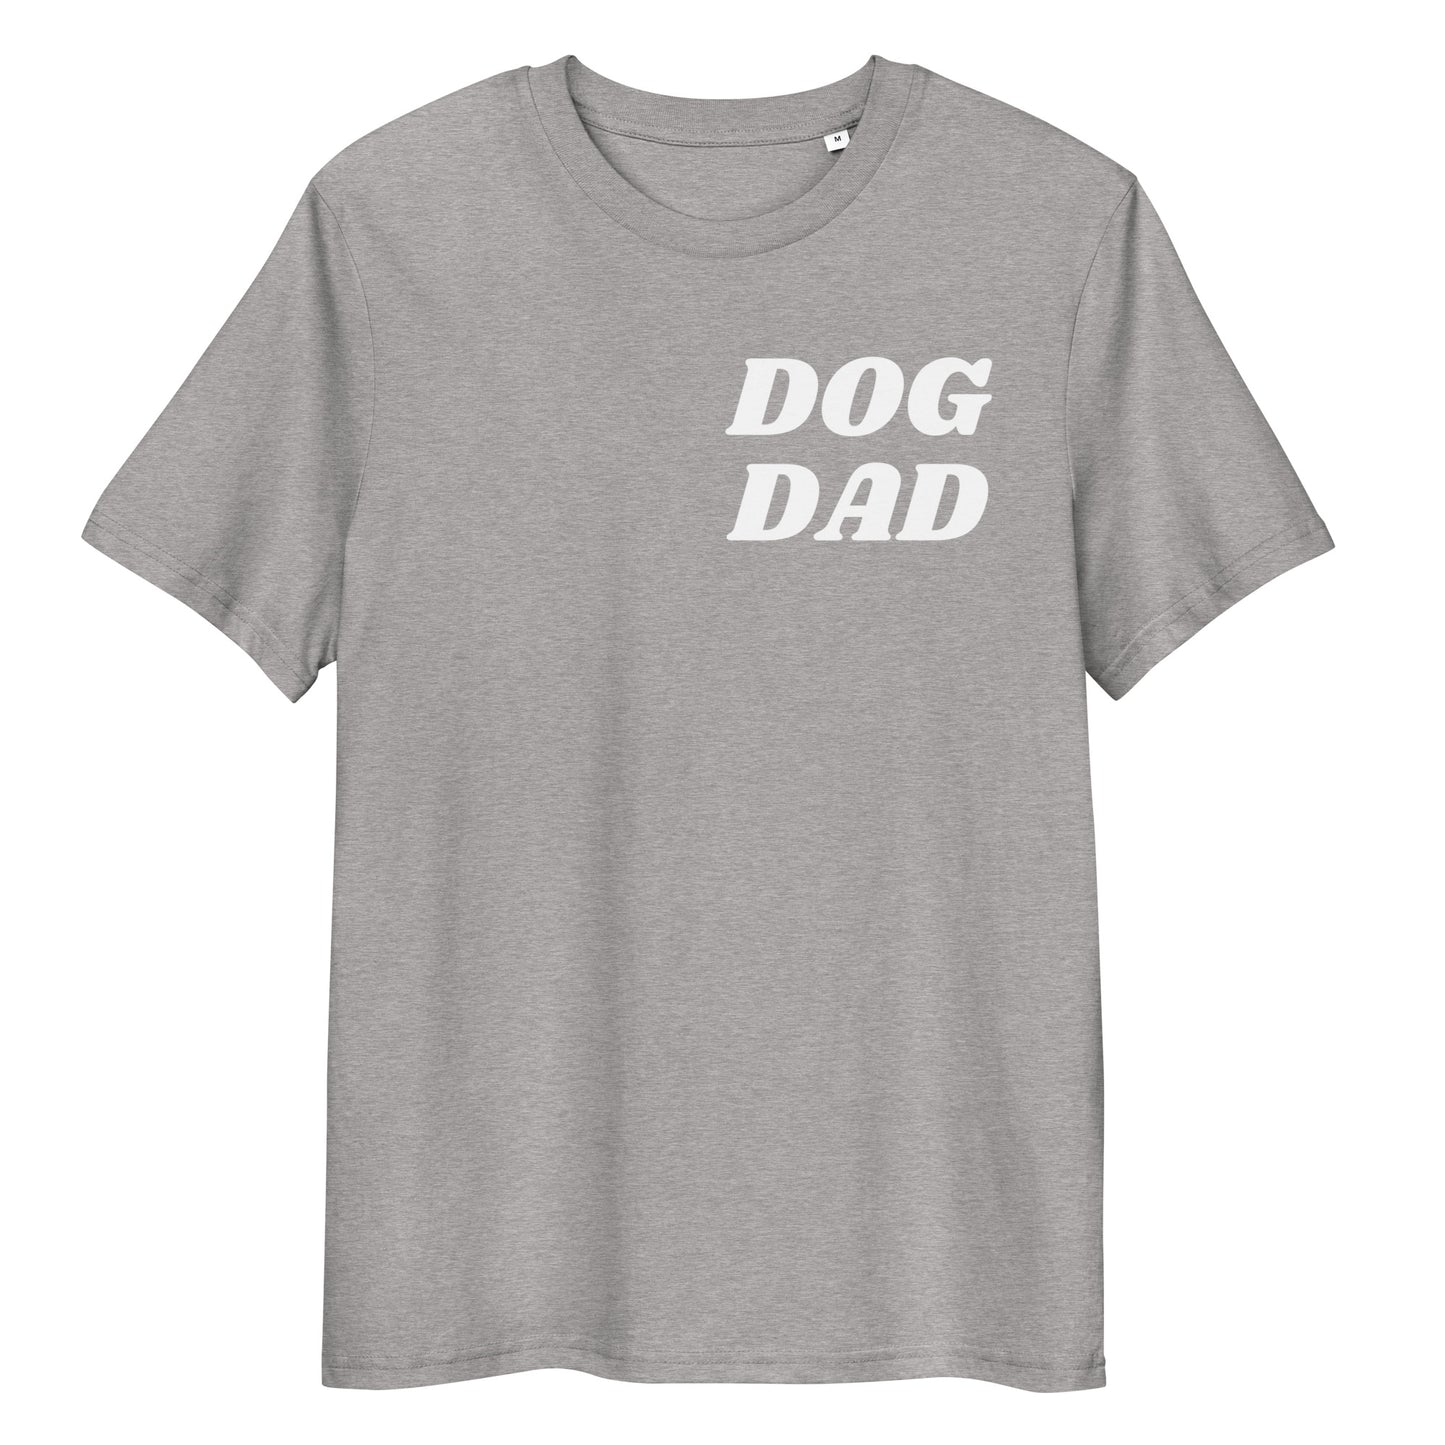 Real Dads are Dogdads Bio-Baumwoll-T-Shirt